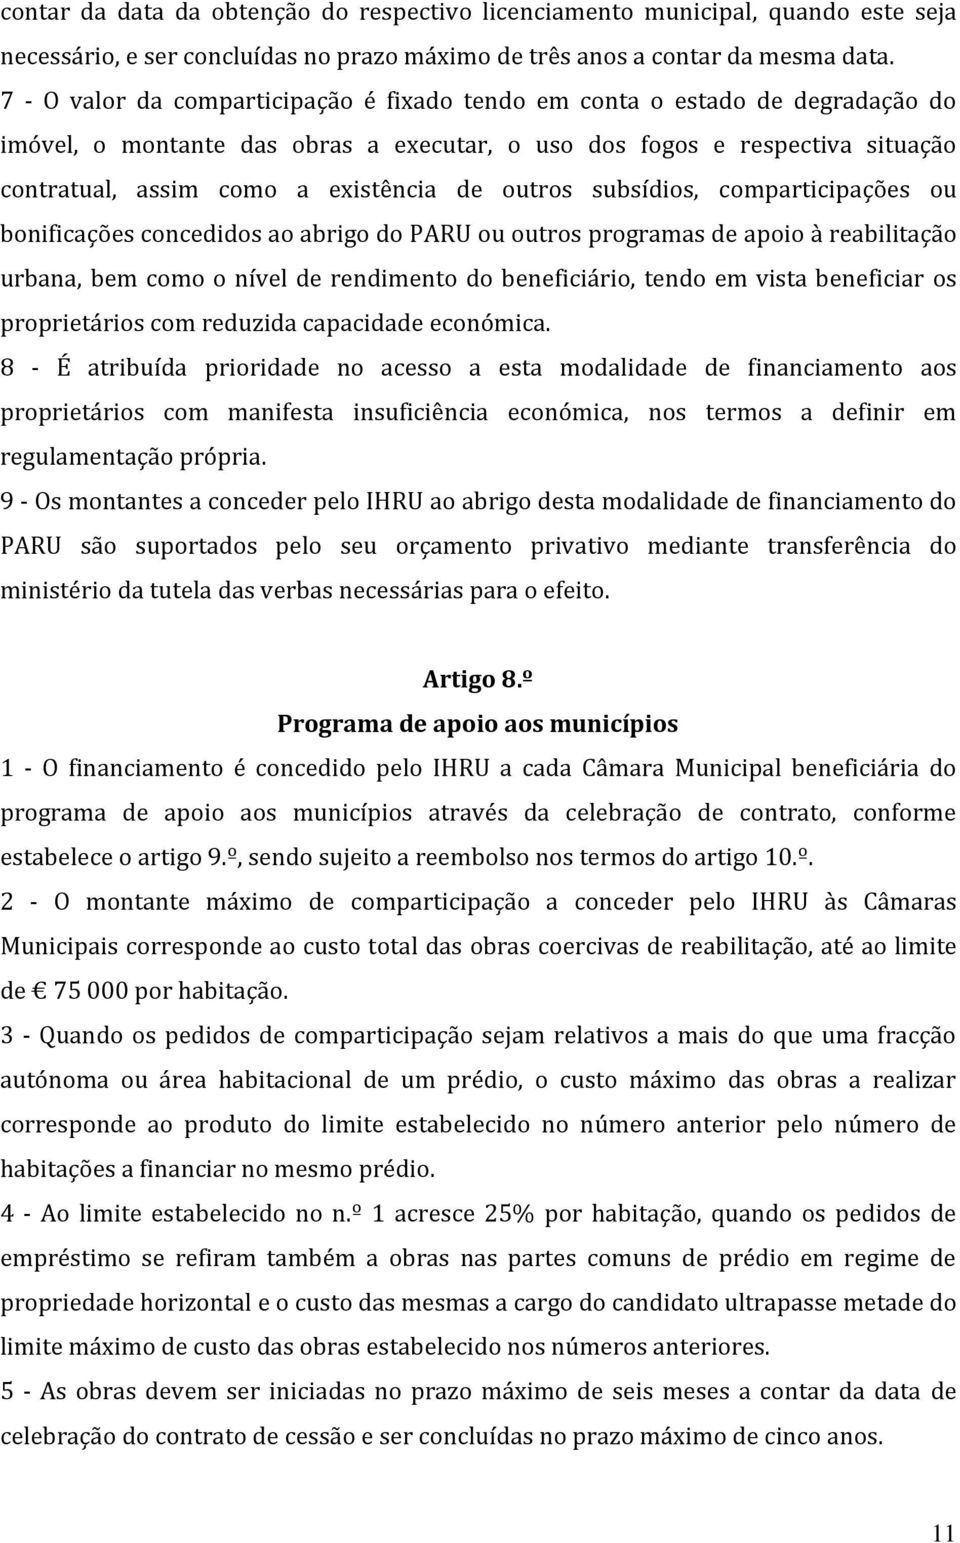 outros subsídios, comparticipações ou bonificações concedidos ao abrigo do PARU ou outros programas de apoio à reabilitação urbana, bem como o nível de rendimento do beneficiário, tendo em vista